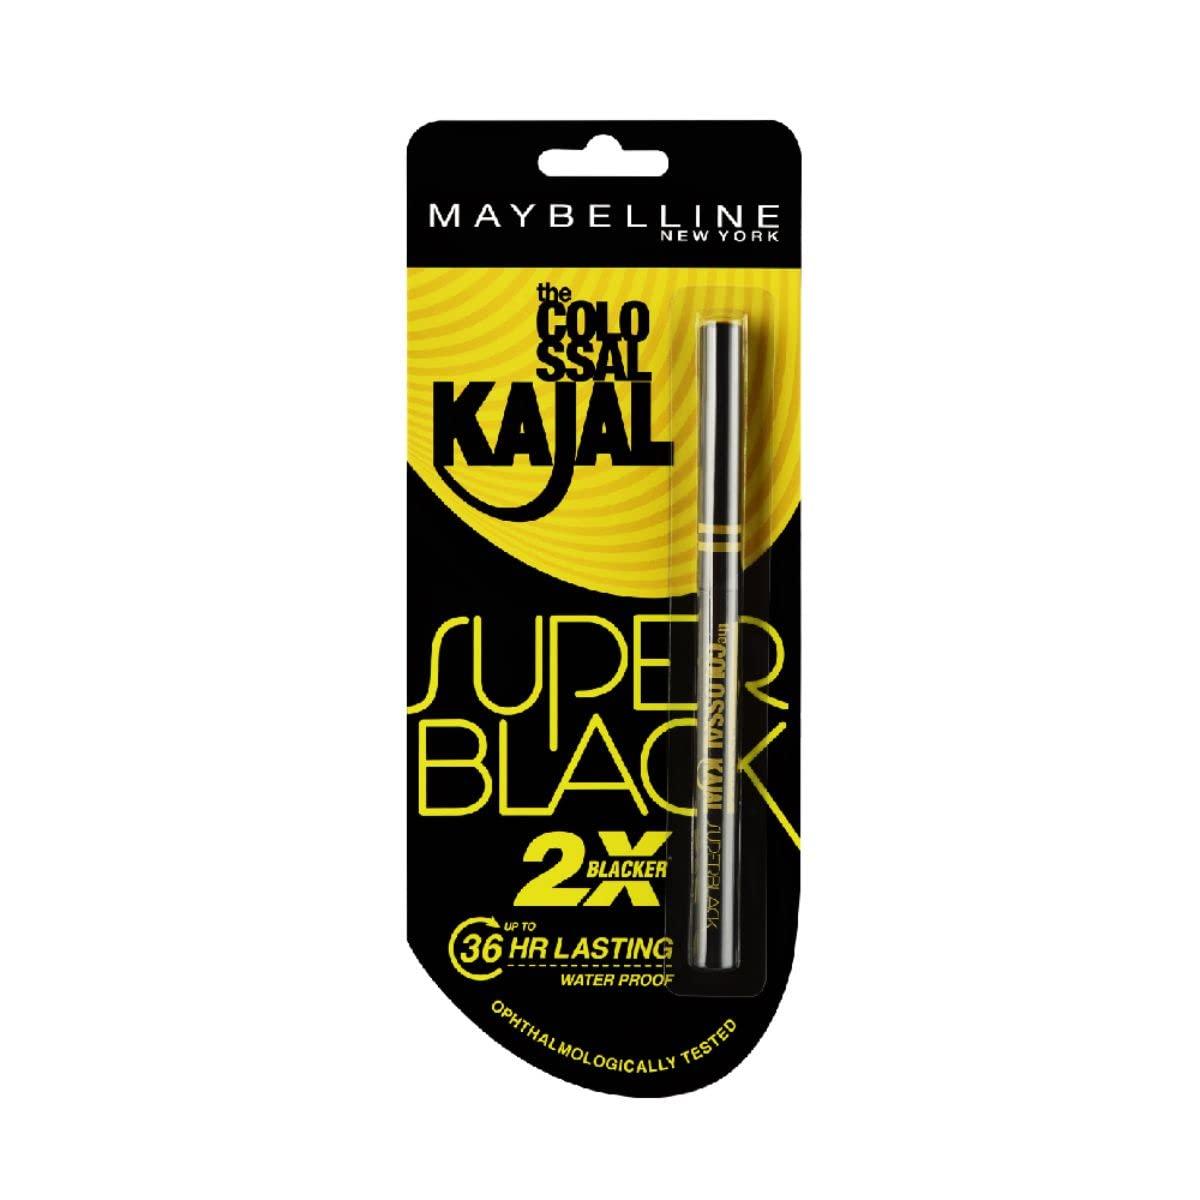 maybelline new york kajal, super black, intense colour, sharp definition, long-lasting, colossal kajal, 0.35g